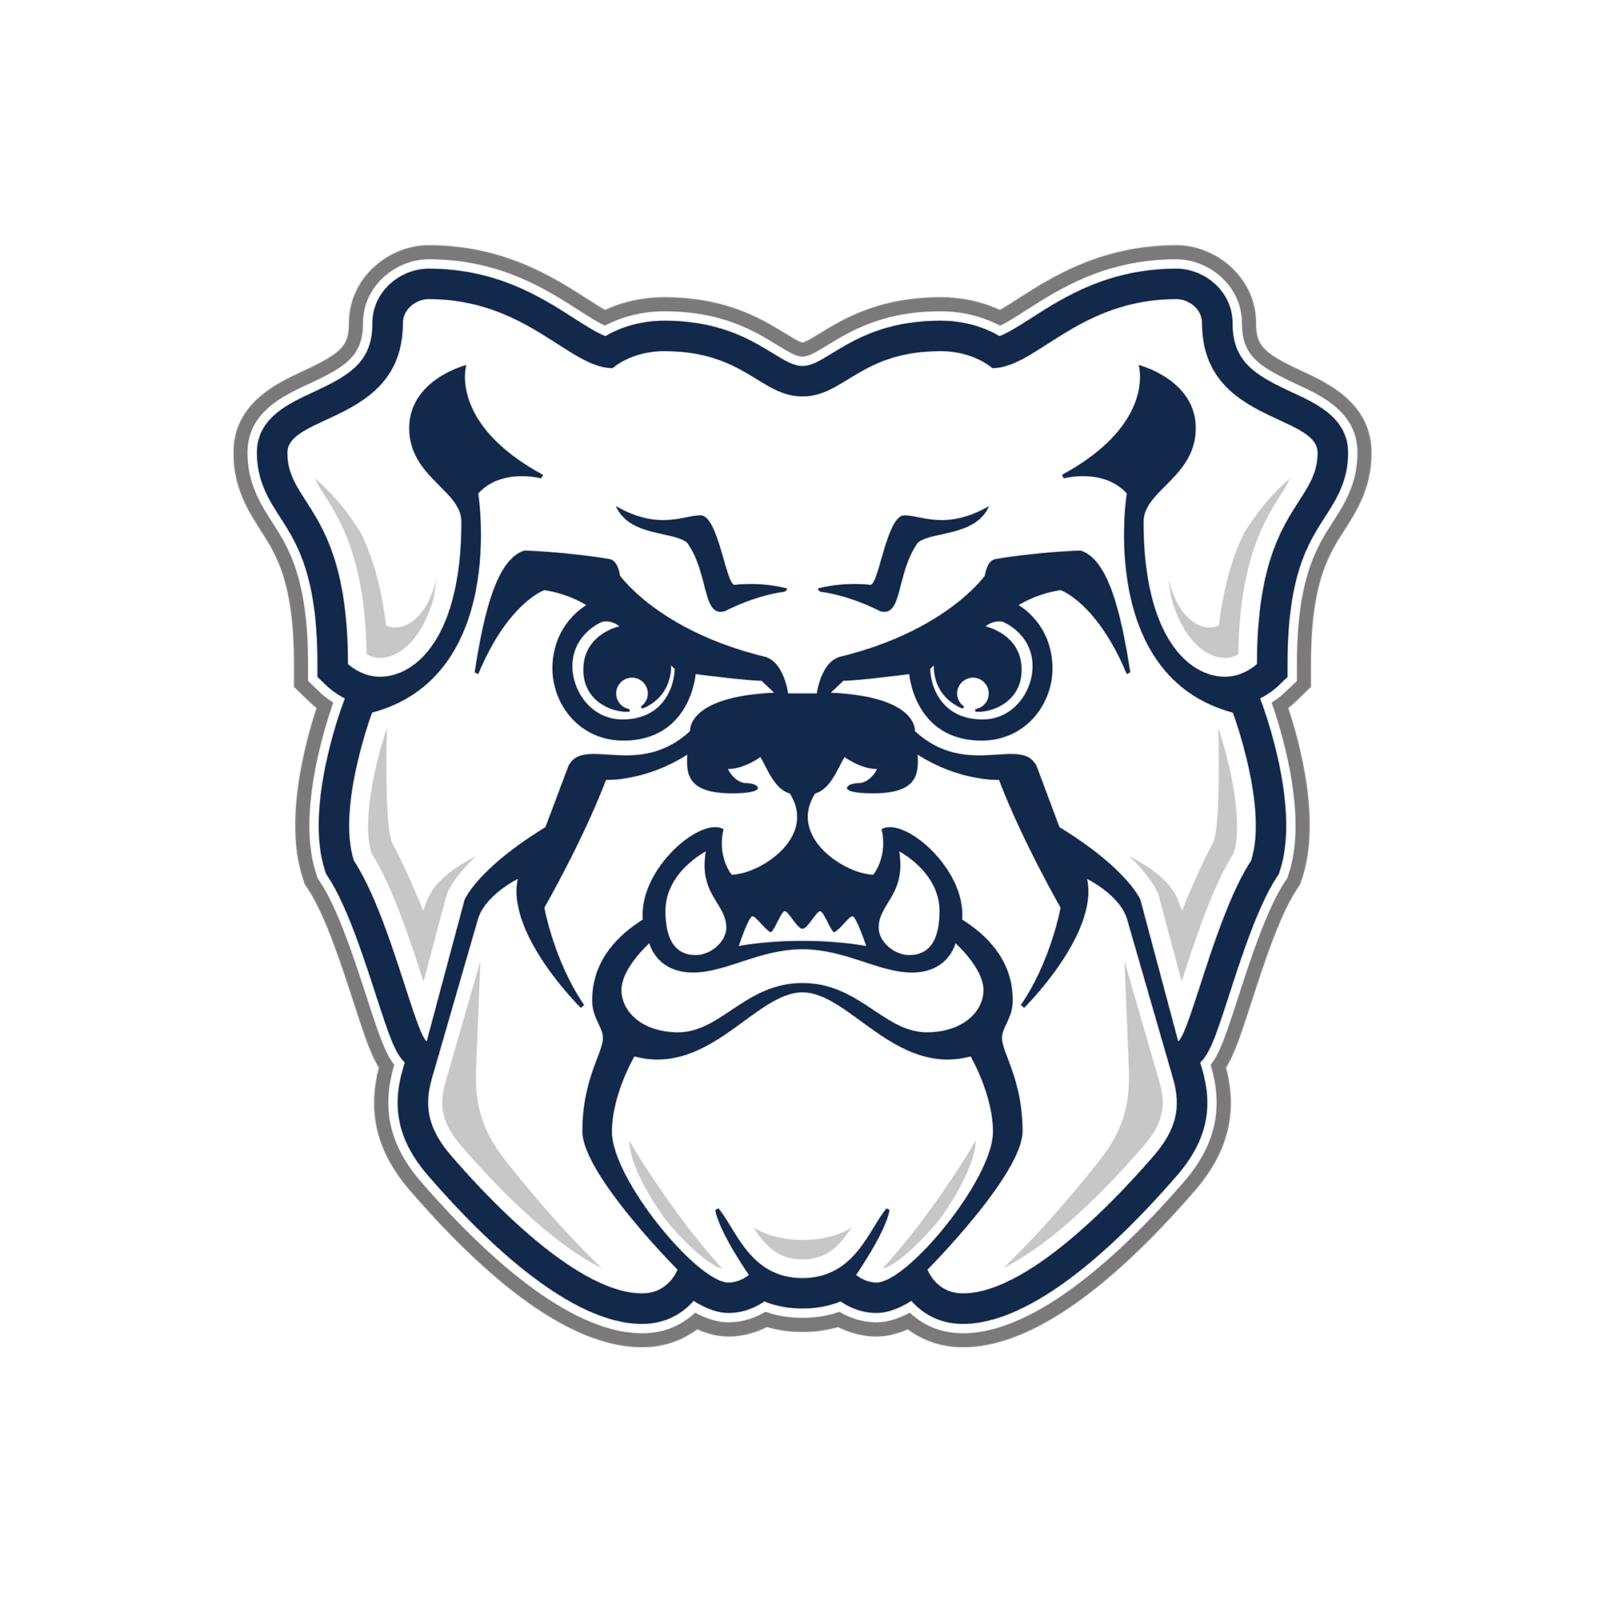 Butler Bulldogs College Basketball Logo